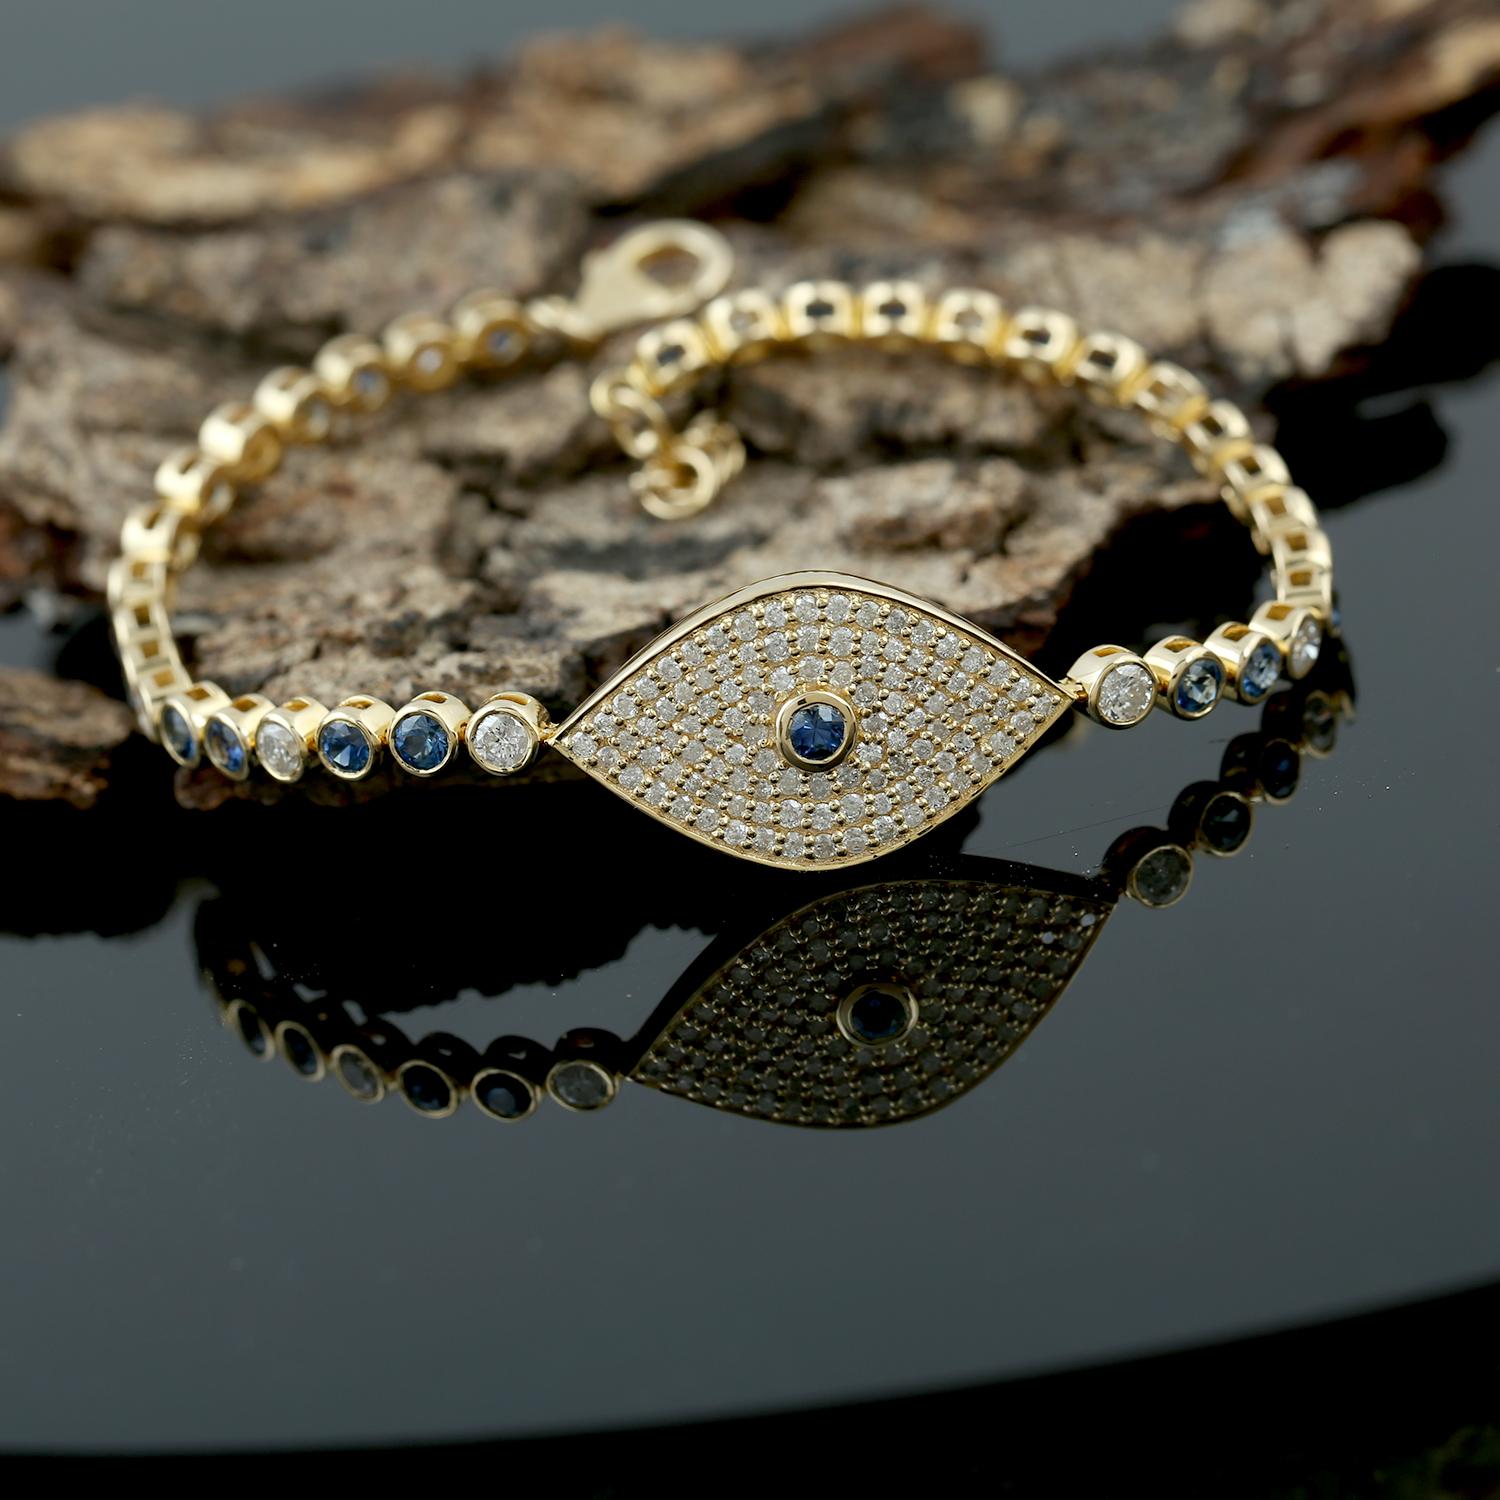 Ein wunderschönes Armband, handgefertigt aus 14 Karat Gold und besetzt mit 2,65 Karat blauem Saphir und 1,92 Karat funkelnden Diamanten. 

FOLLOW MEGHNA JEWELS Storefront, um die neueste Kollektion und exklusive Stücke zu sehen. Meghna Jewels ist